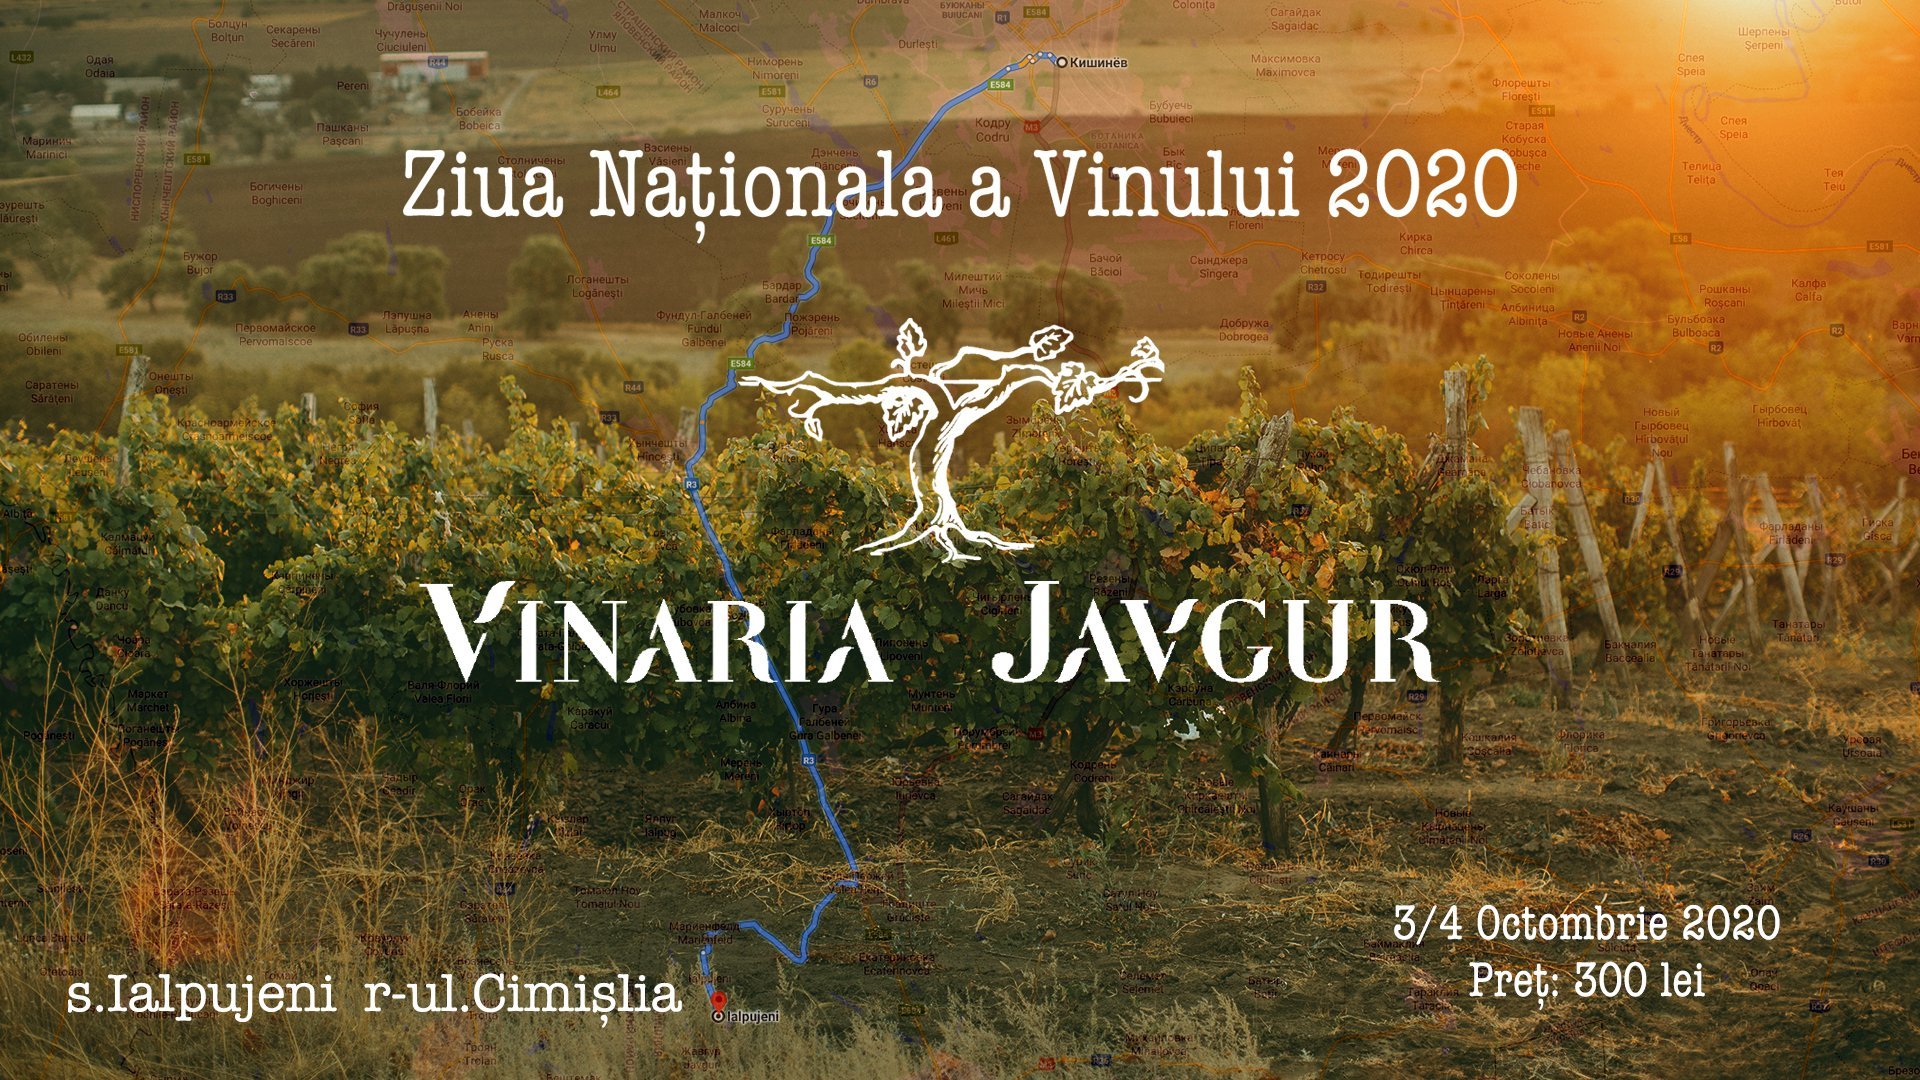 Ziua Nationala a Vinului impreuna cu Vinaria Javgur